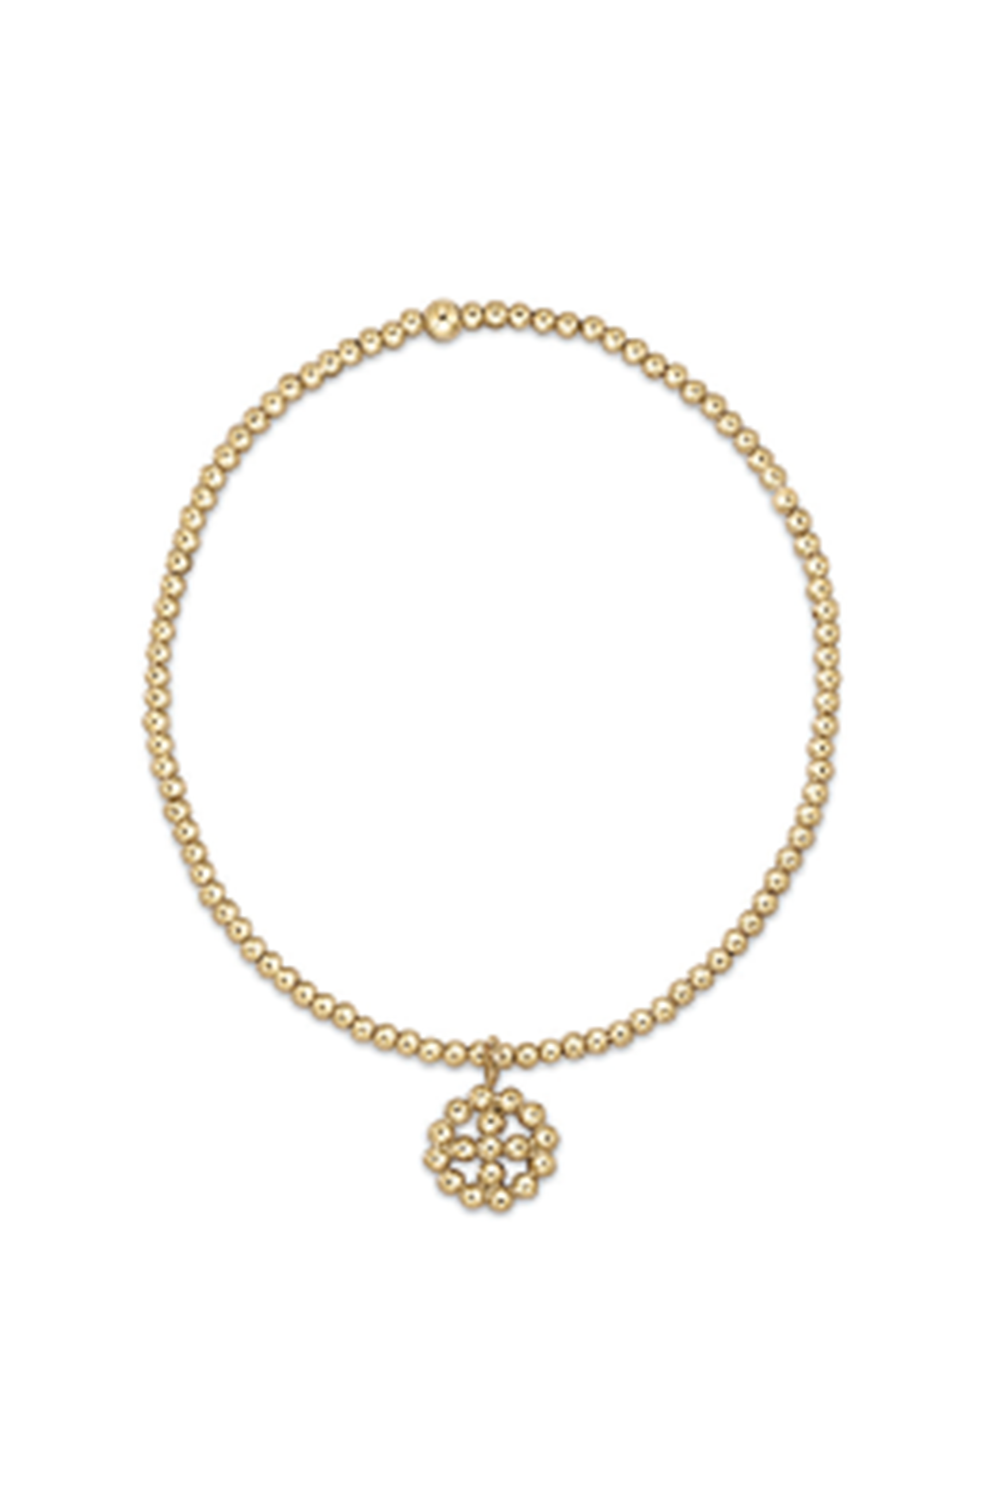 EN Classic Gold Bead Bracelet - Beaded Cross in Beaded Halo Charm